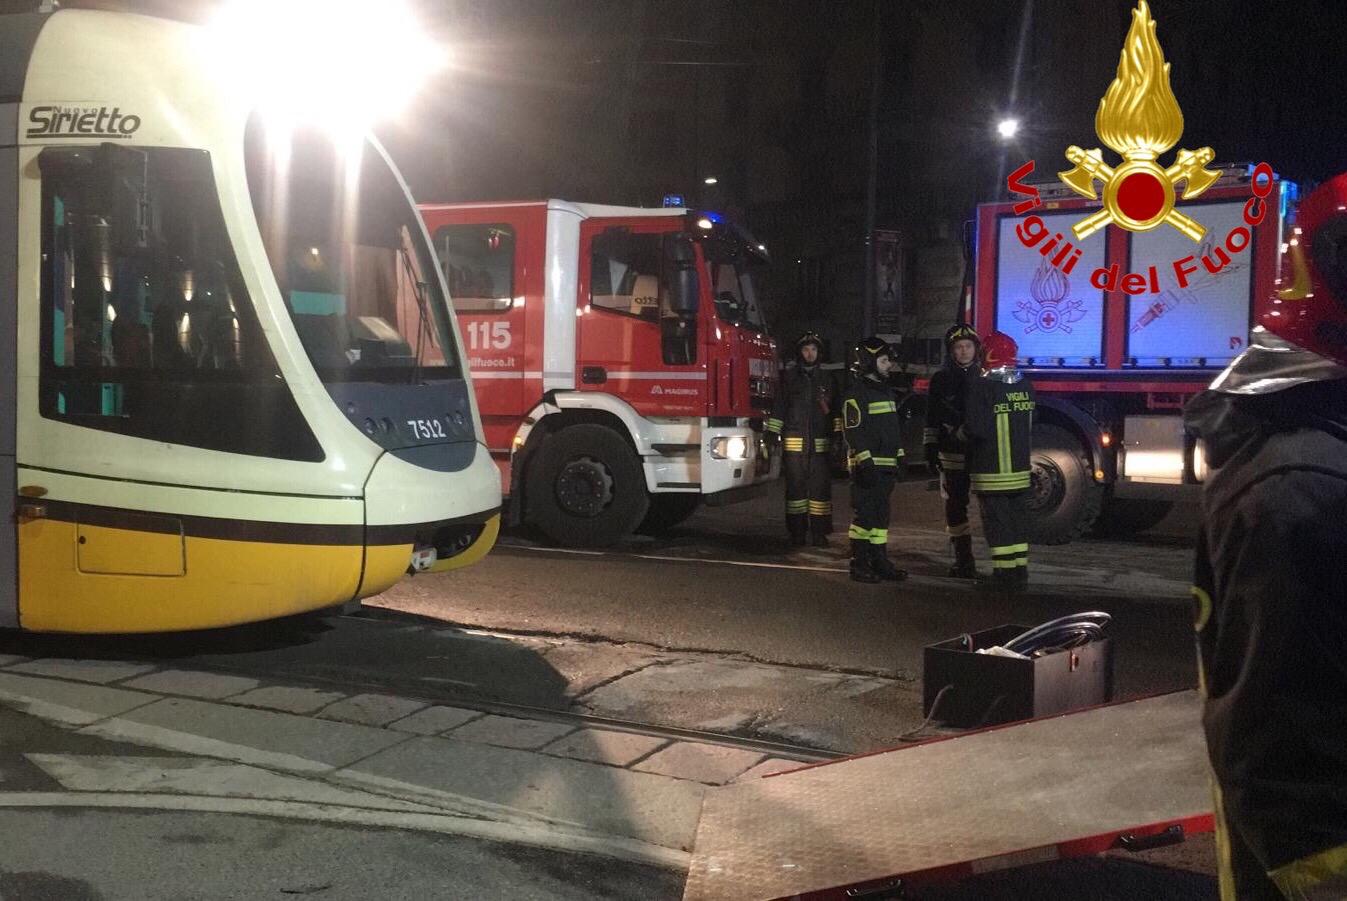 corea del sud. Turista della Corea del sud muore sotto il tram - 11/02/2020